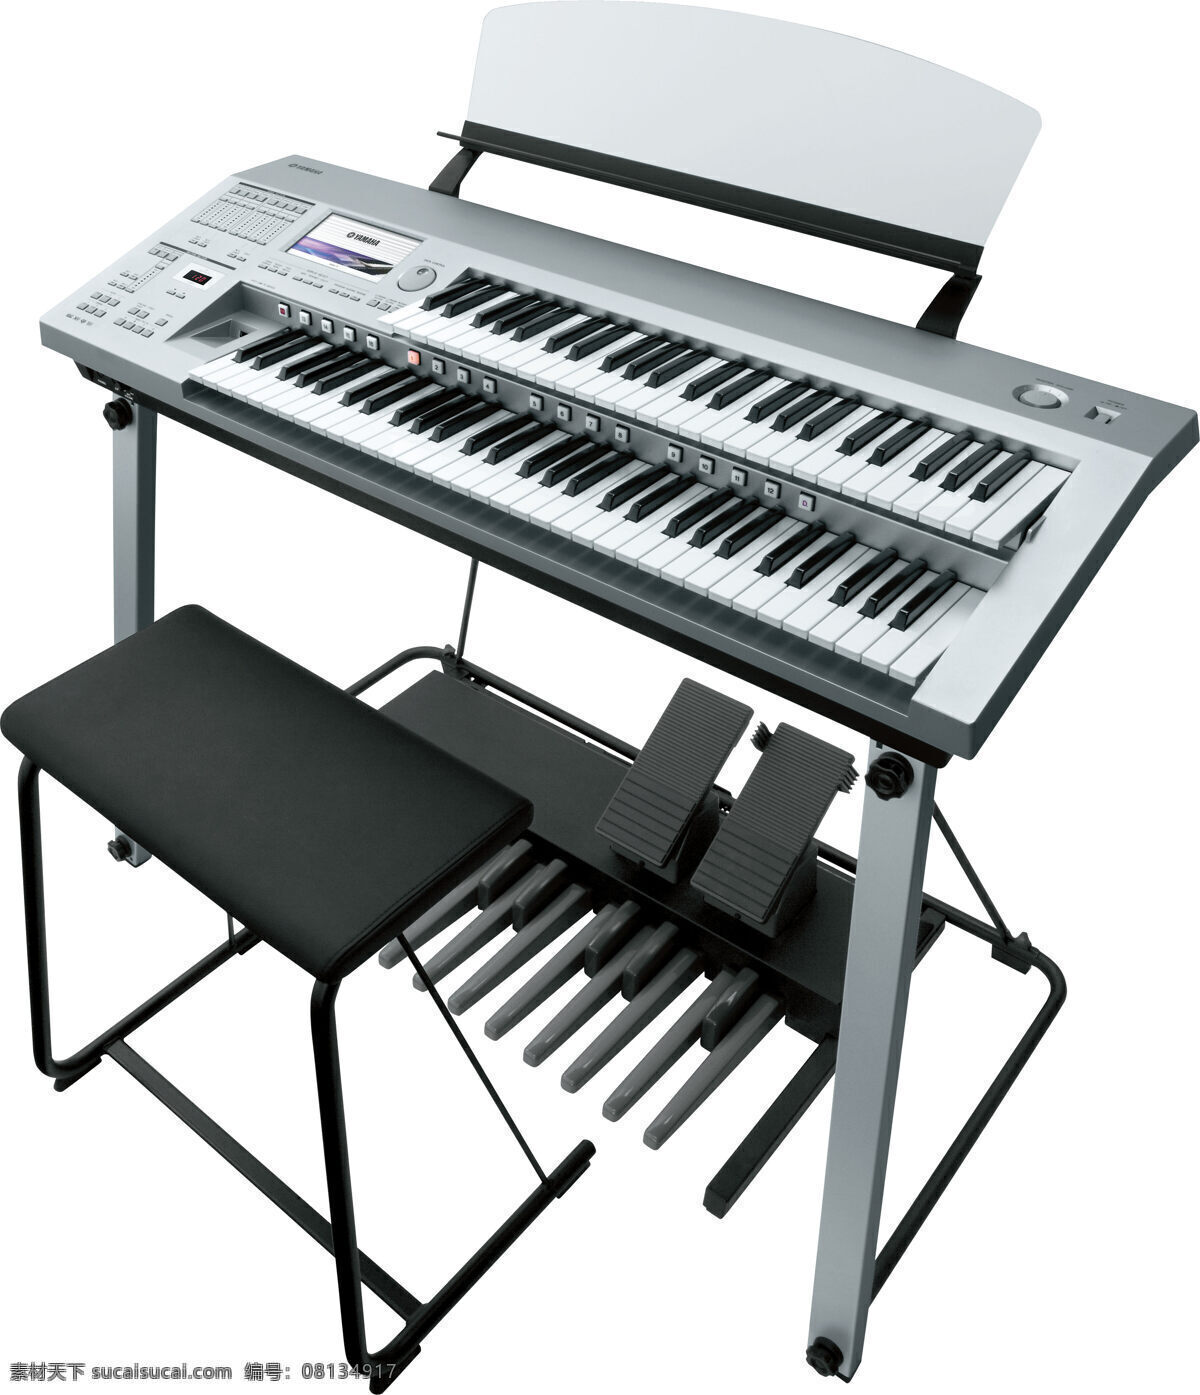 电子琴 立式 乐谱架 凳子 110琴键 功能键 踏脚板 专业电子琴 演奏音乐乐器 乐器 舞蹈音乐 文化艺术